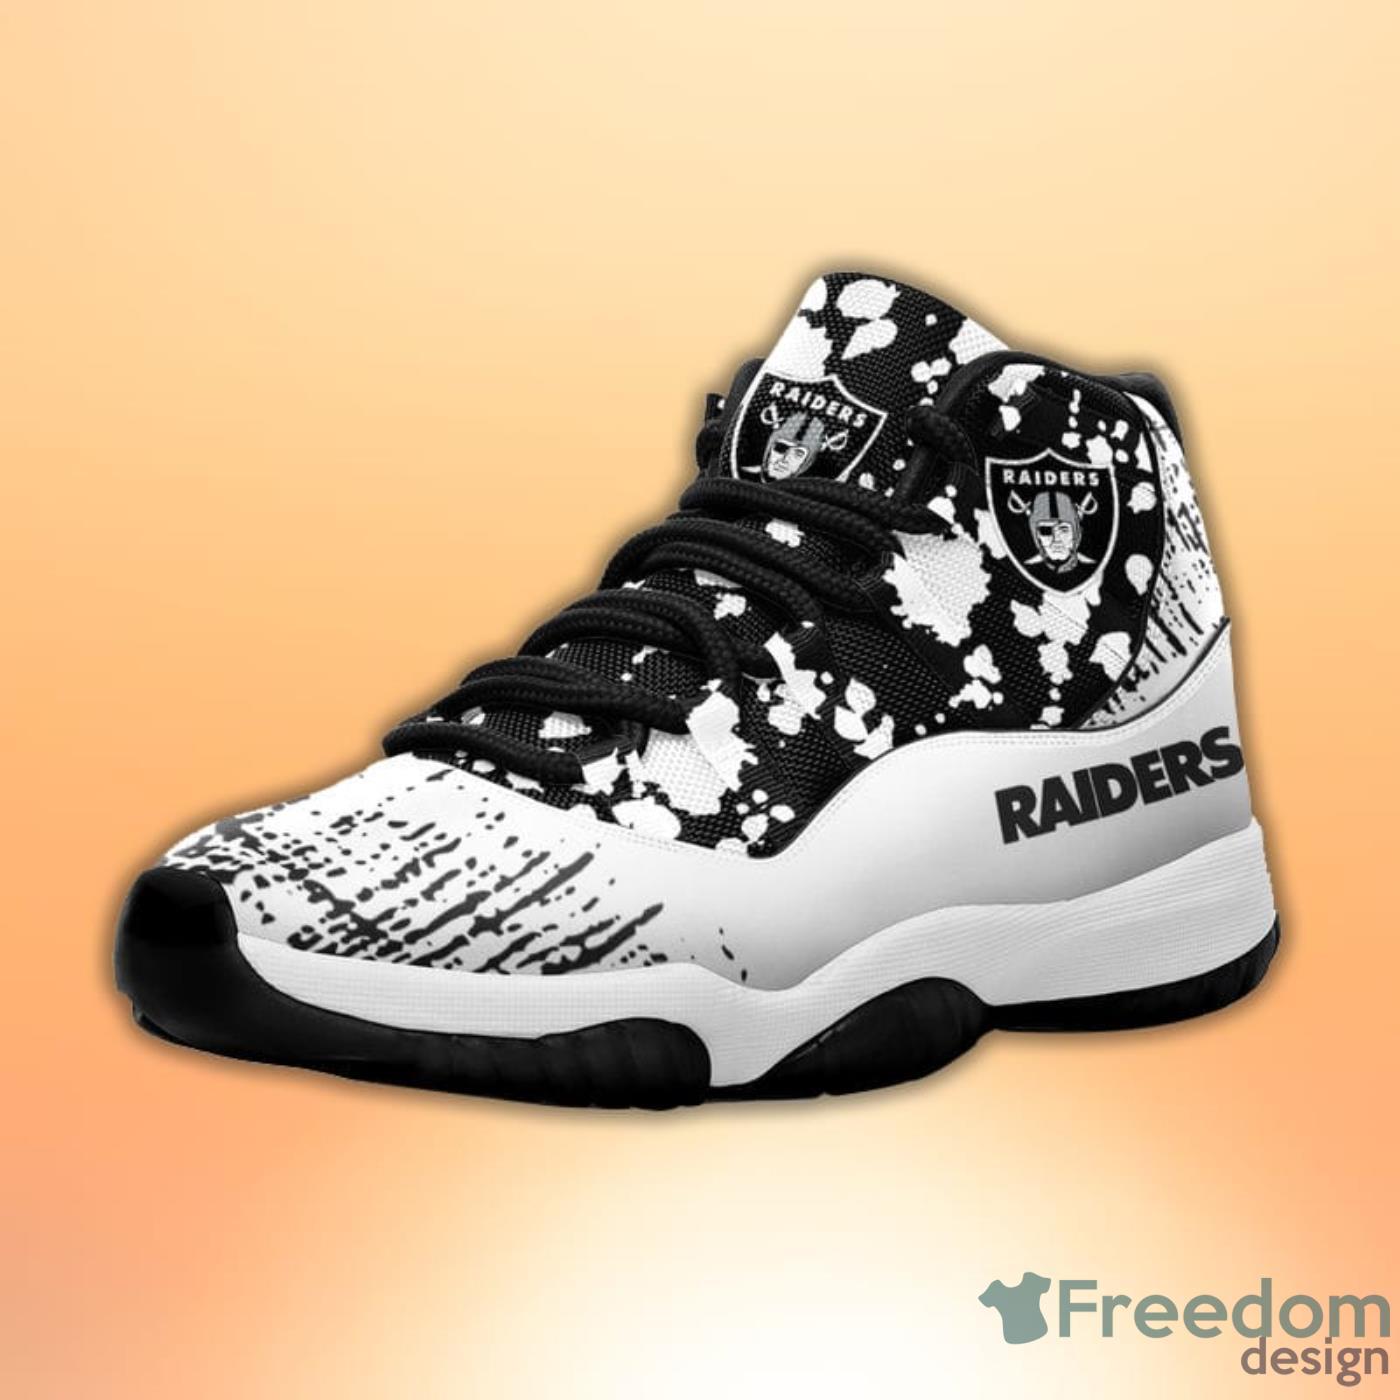 Las Vegas Raiders Pattern Texture Style Sneaker Air Jordan 11 Shoes -  Freedomdesign